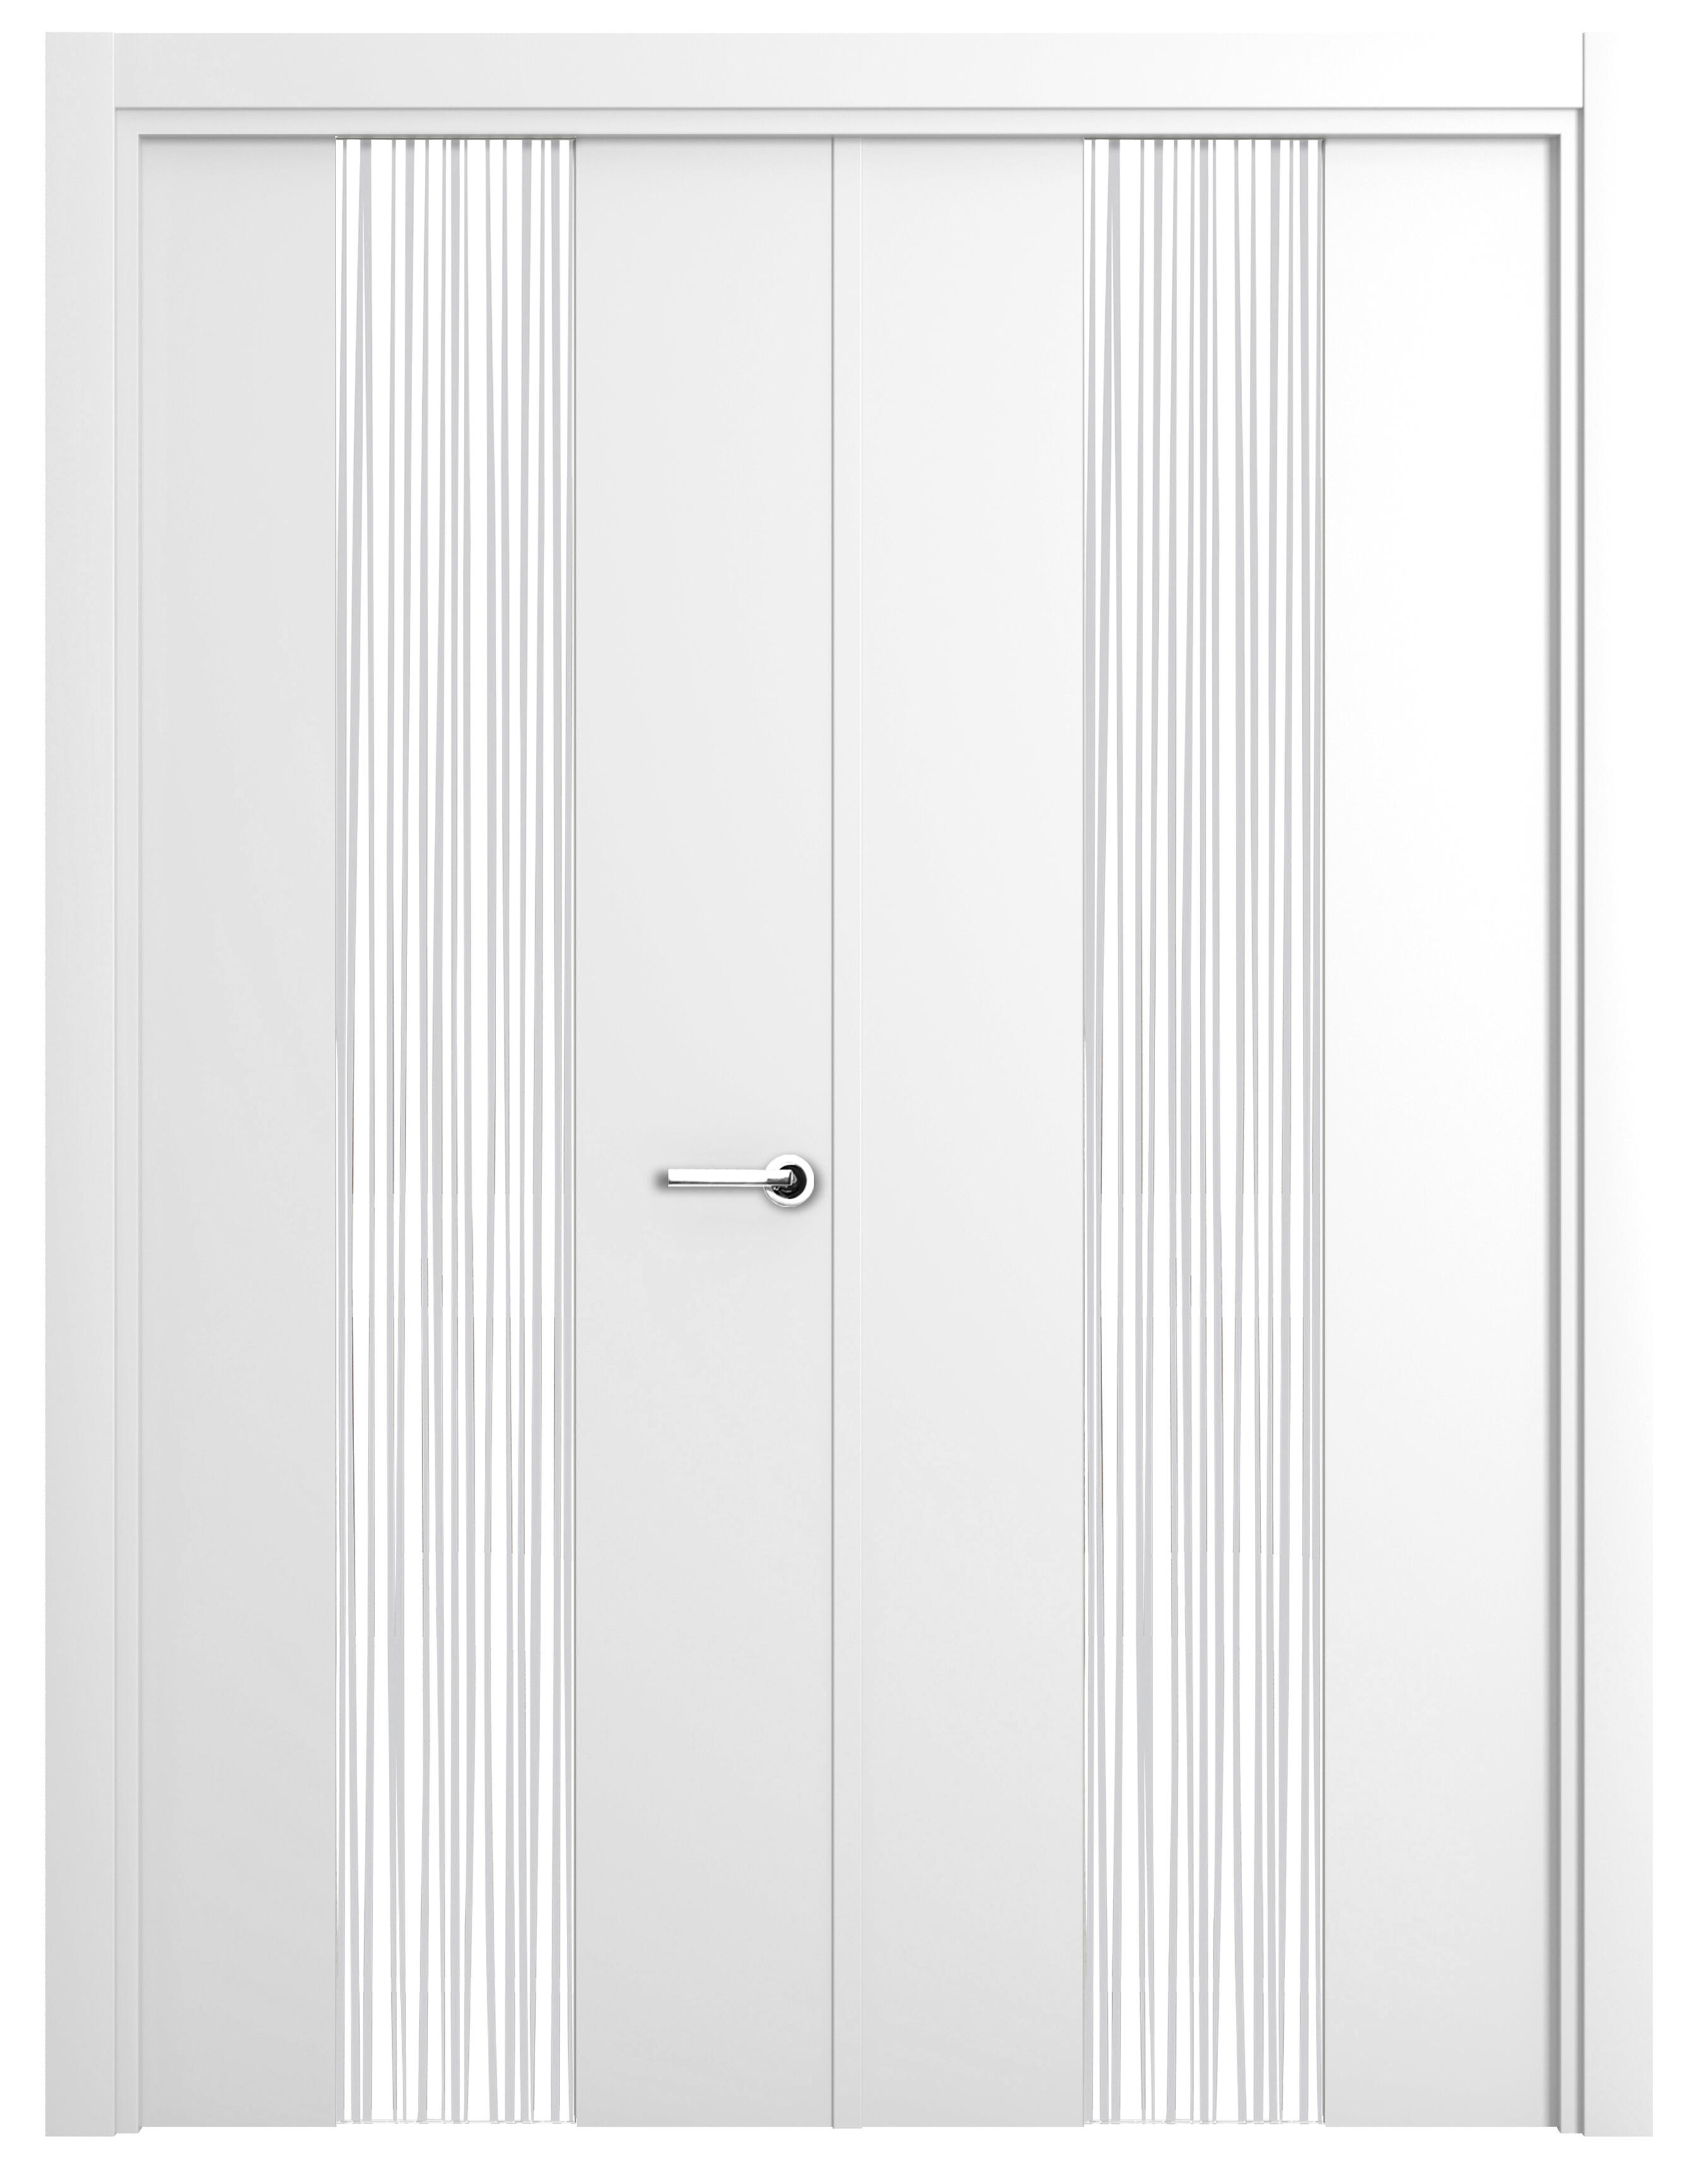 Puerta abatible quevedo blanca premium con cristal blanco izquierda de 145 c